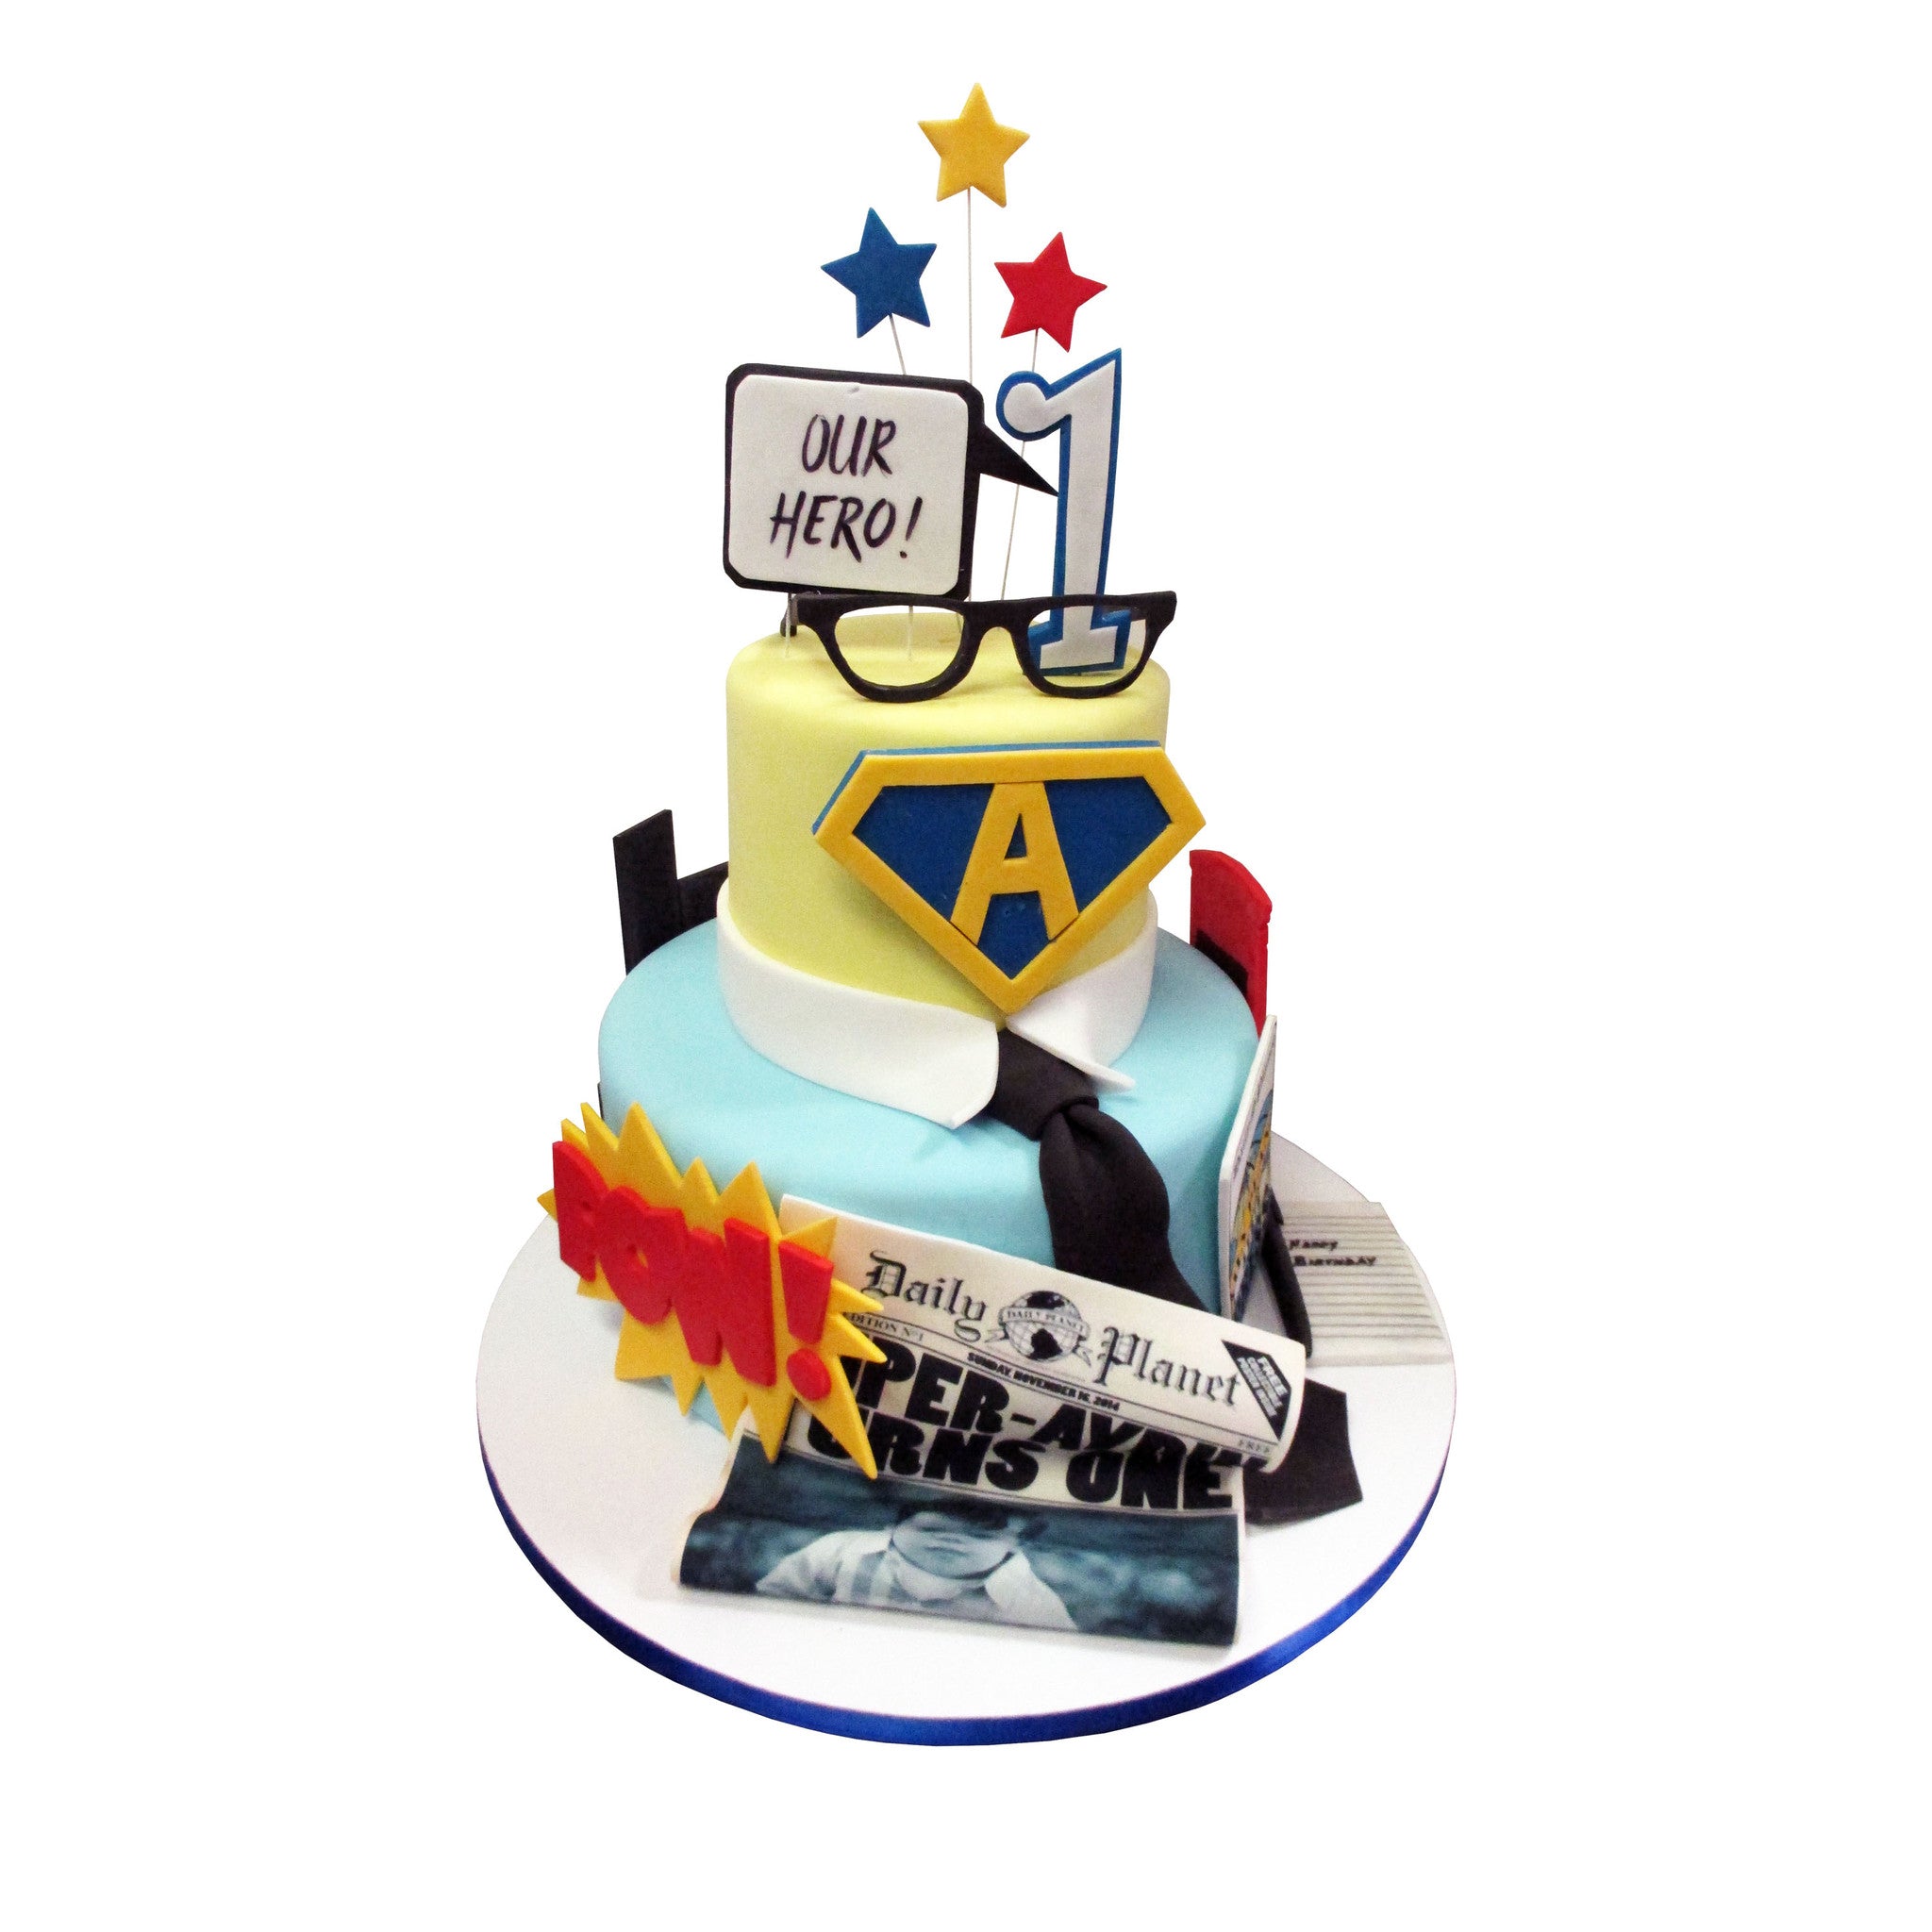 SUPERMAN CAKE - Birthday Cake Decorating - YouTube